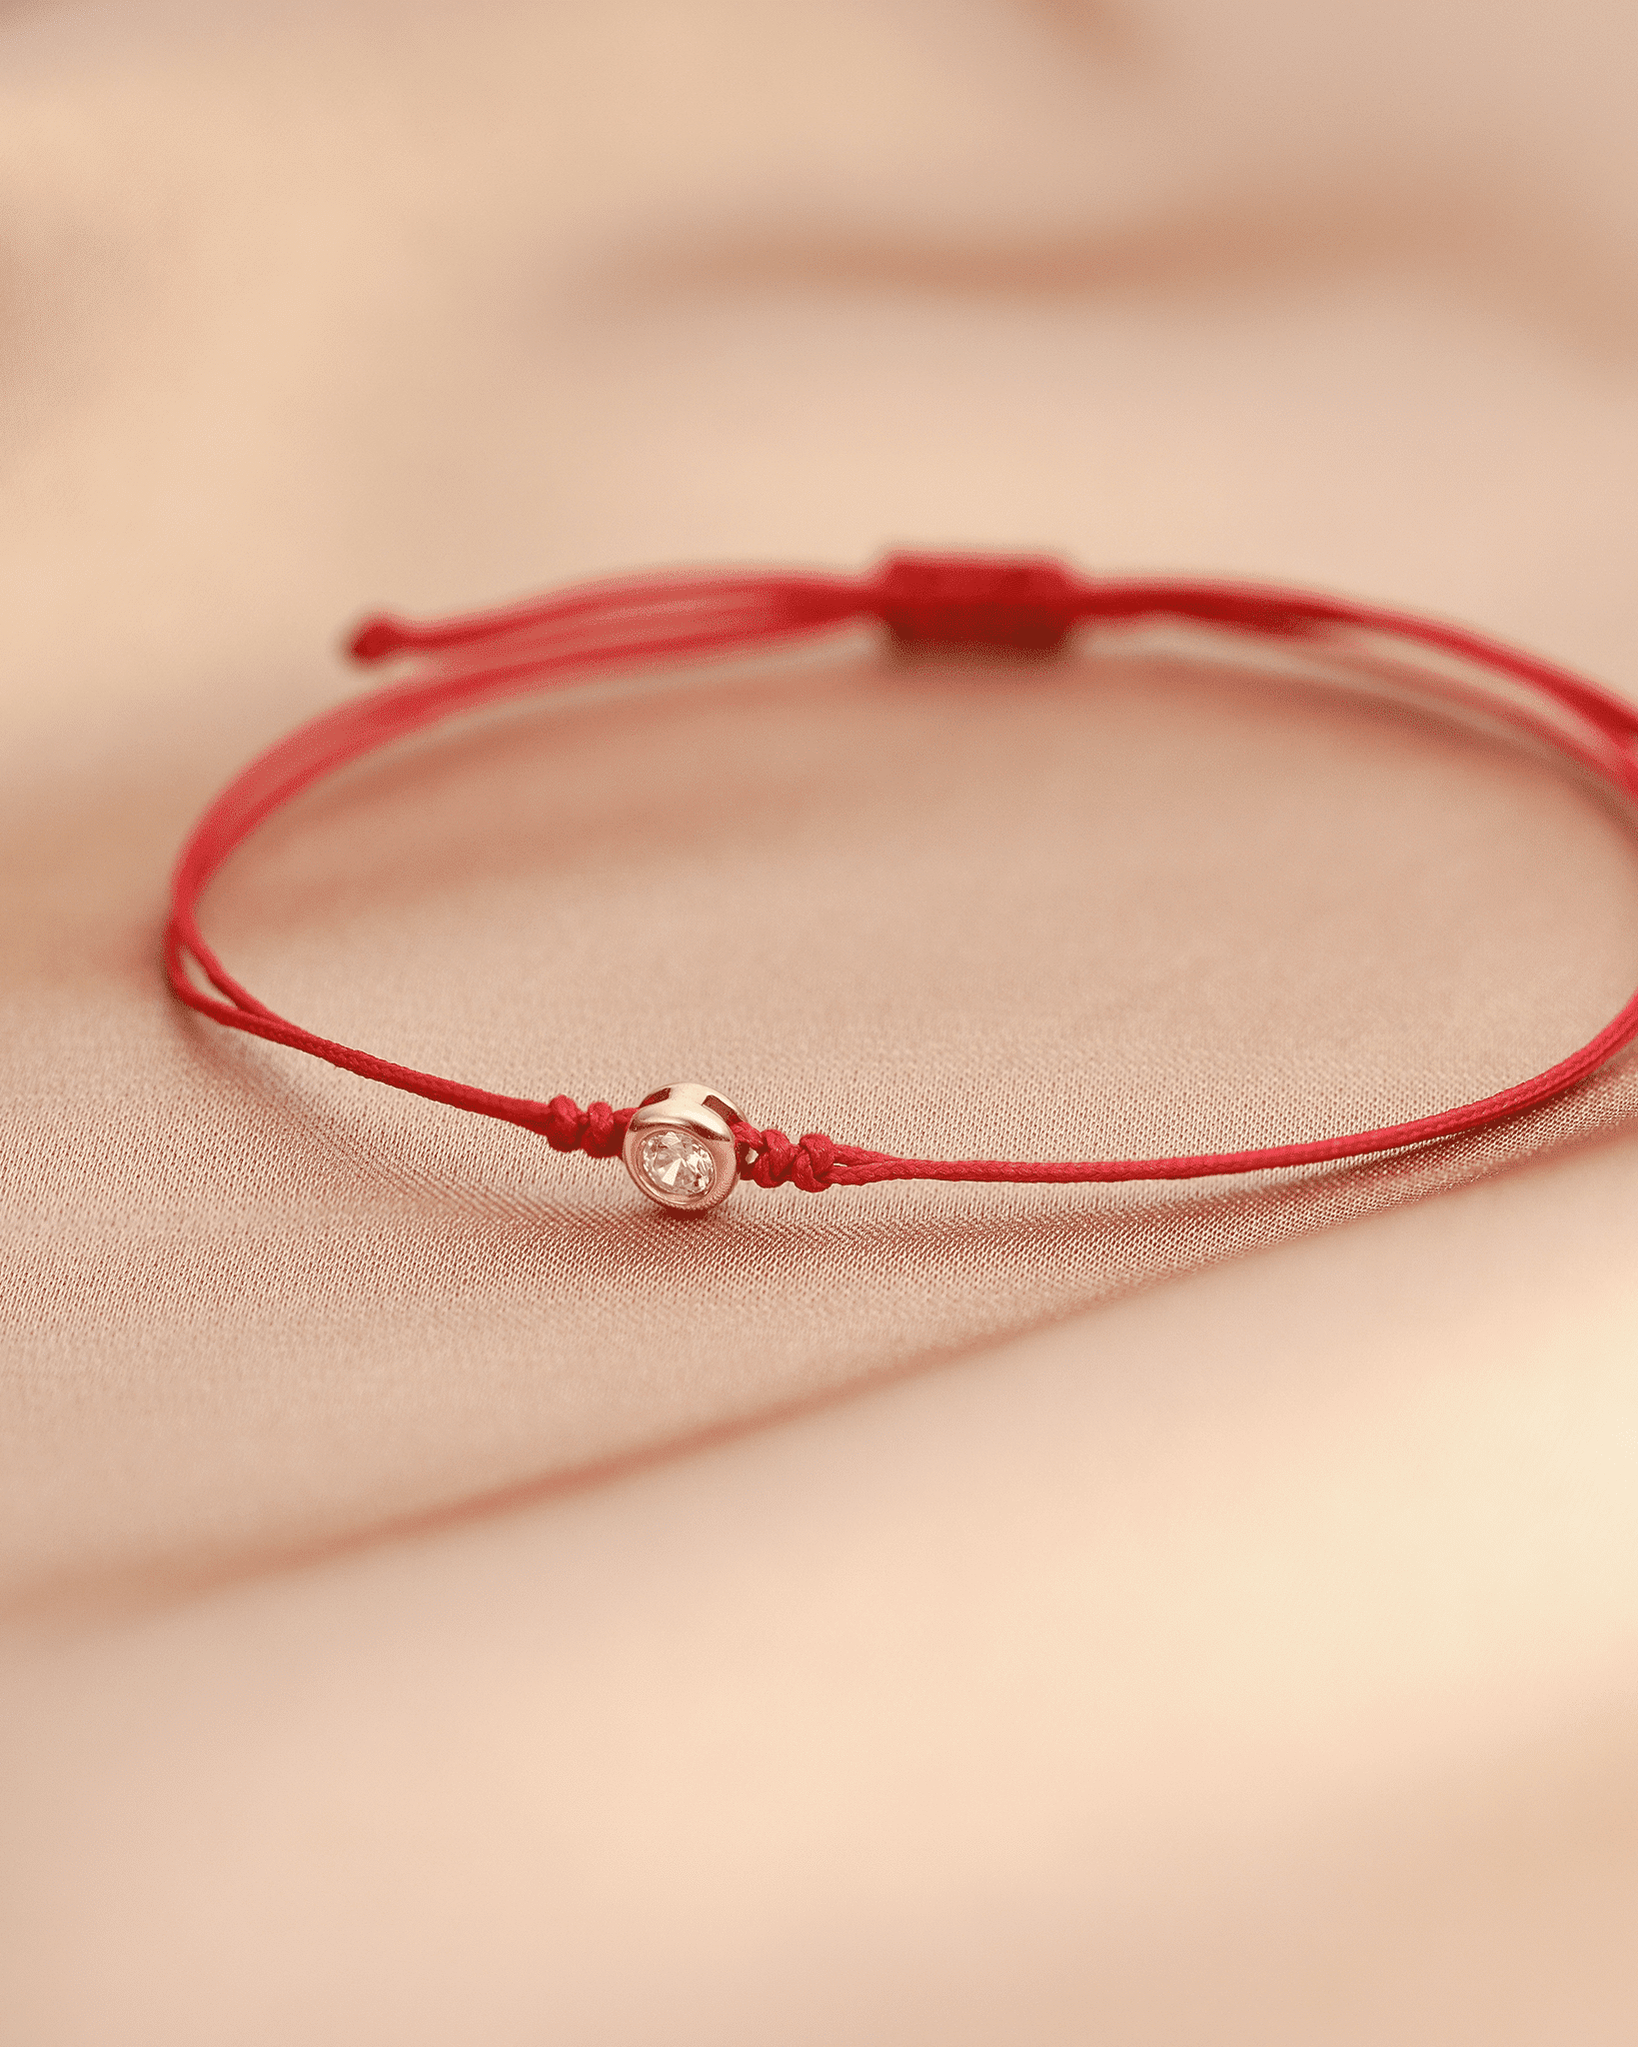 Le String of Love - Or Rose 14 carats Bracelets magal-dev 